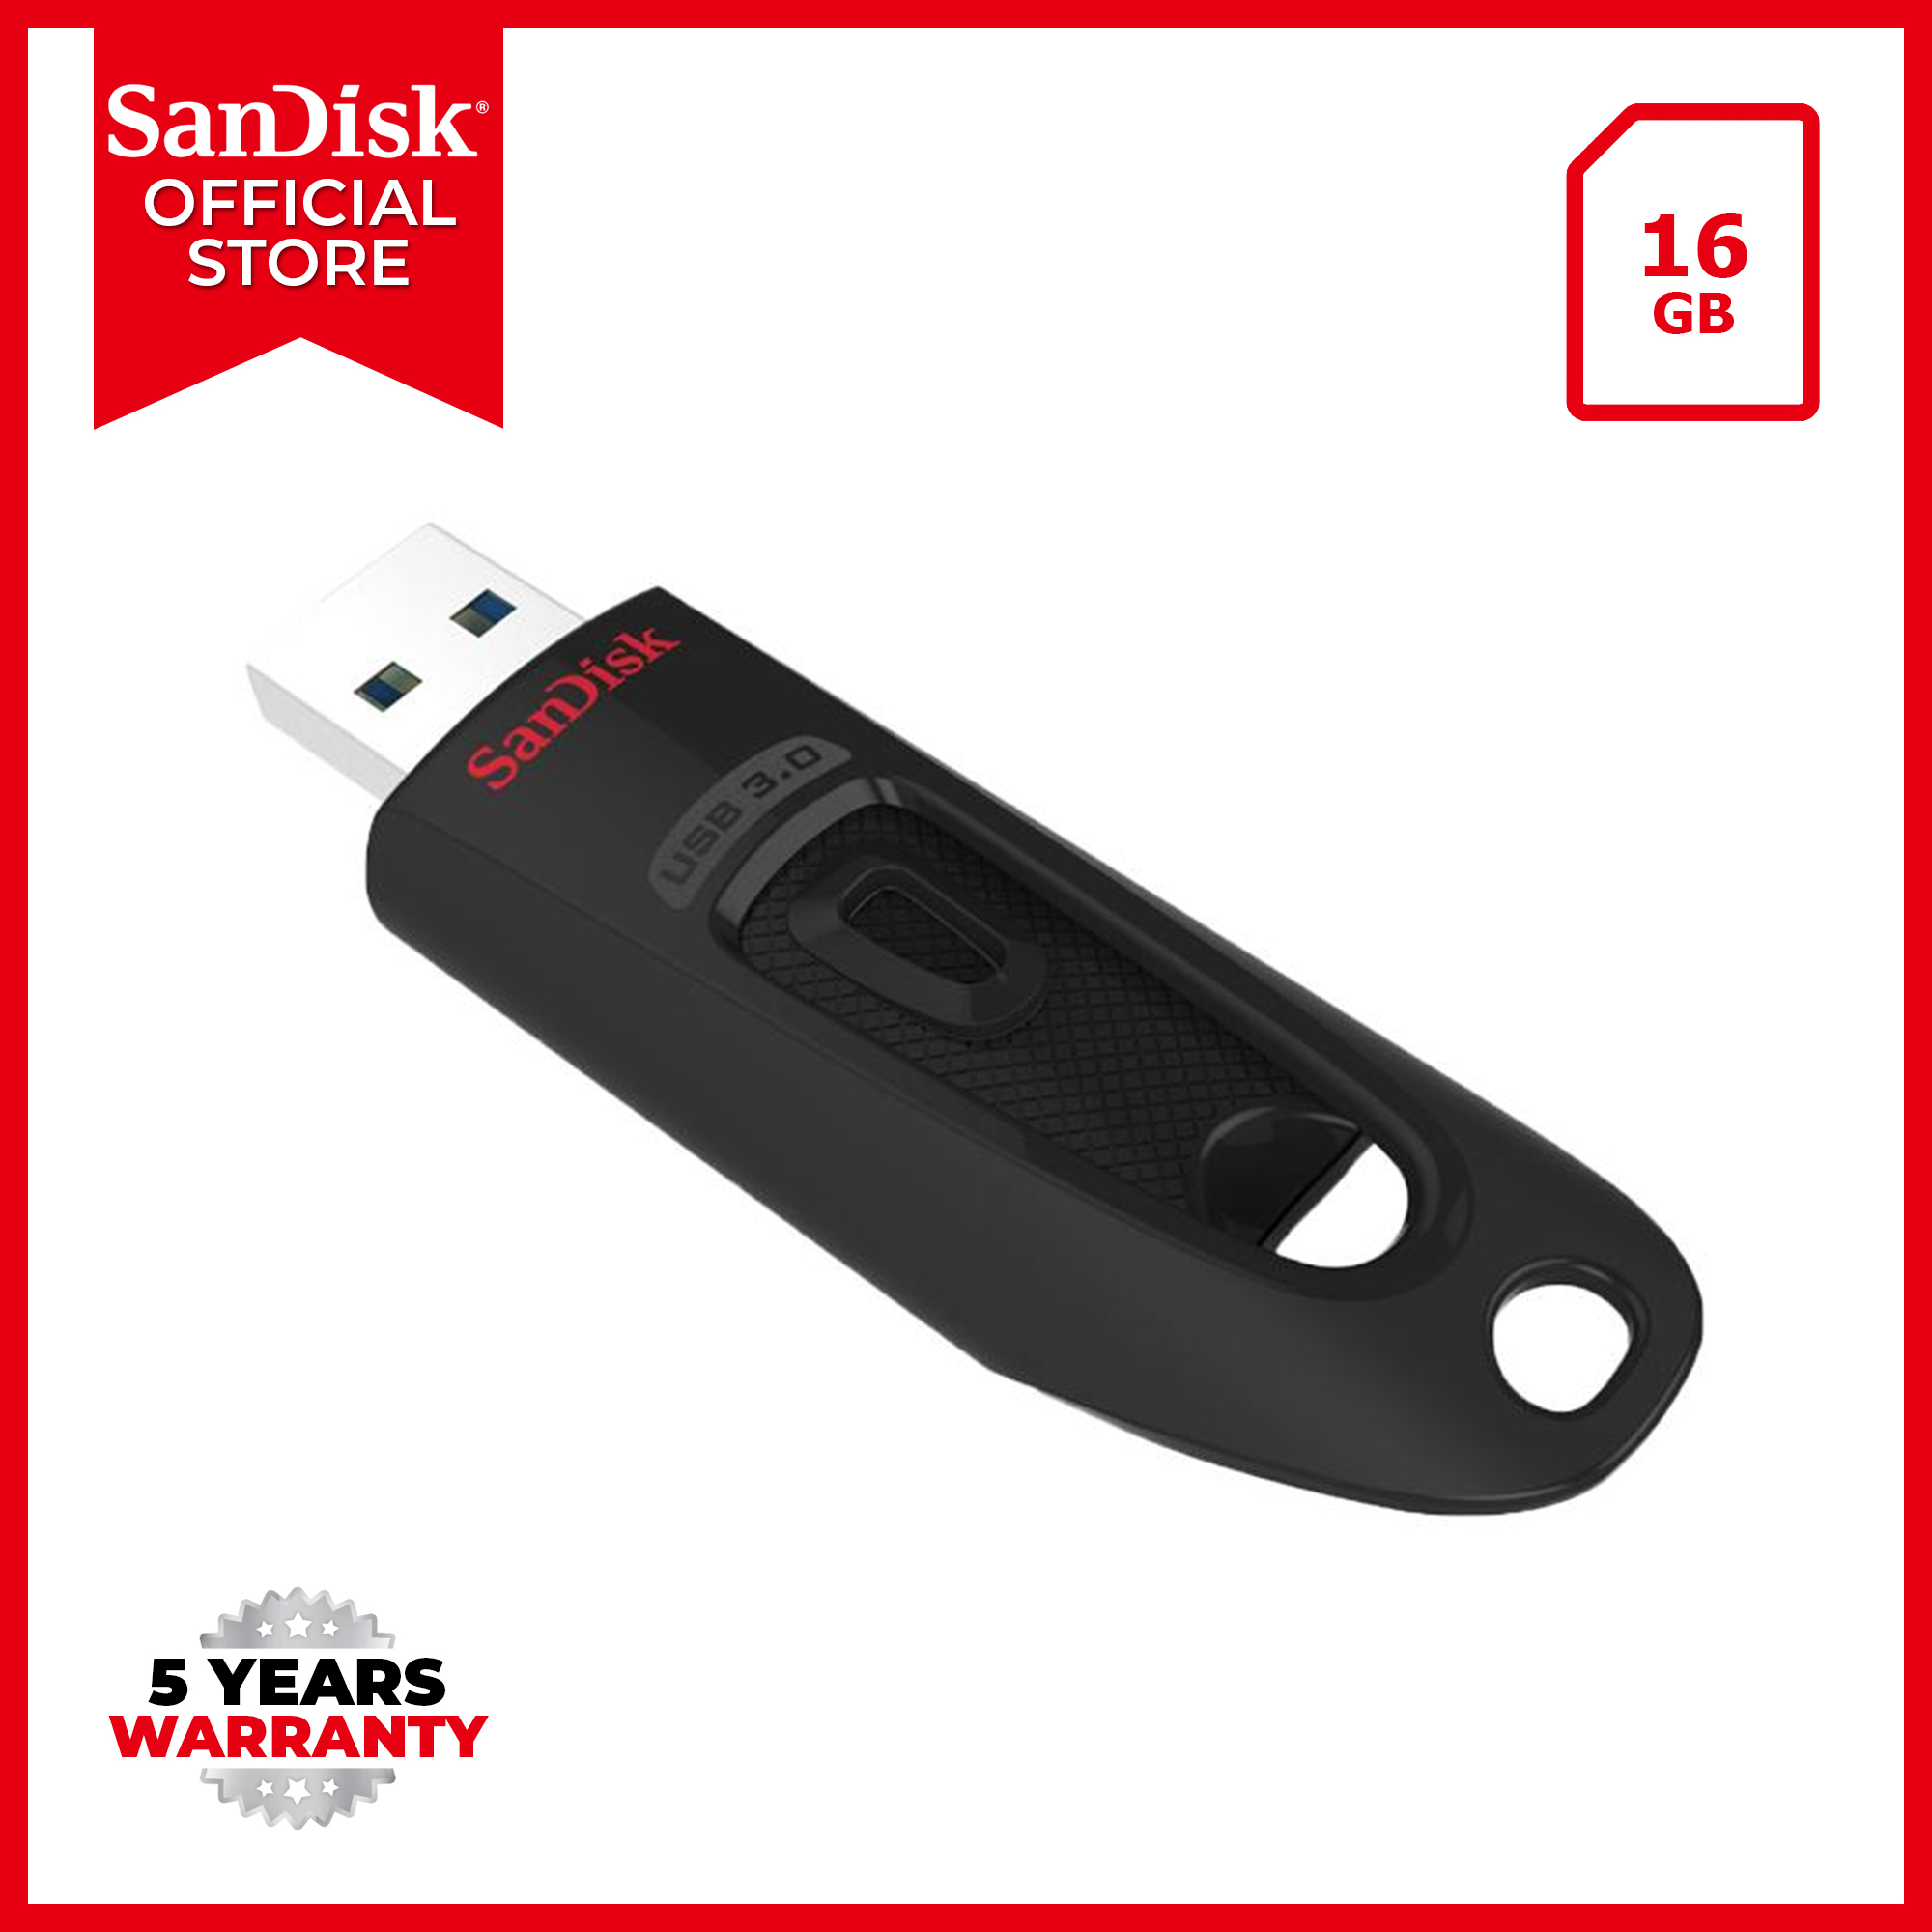 Buy Sandisk Flash Drives Online Lazada Com Ph